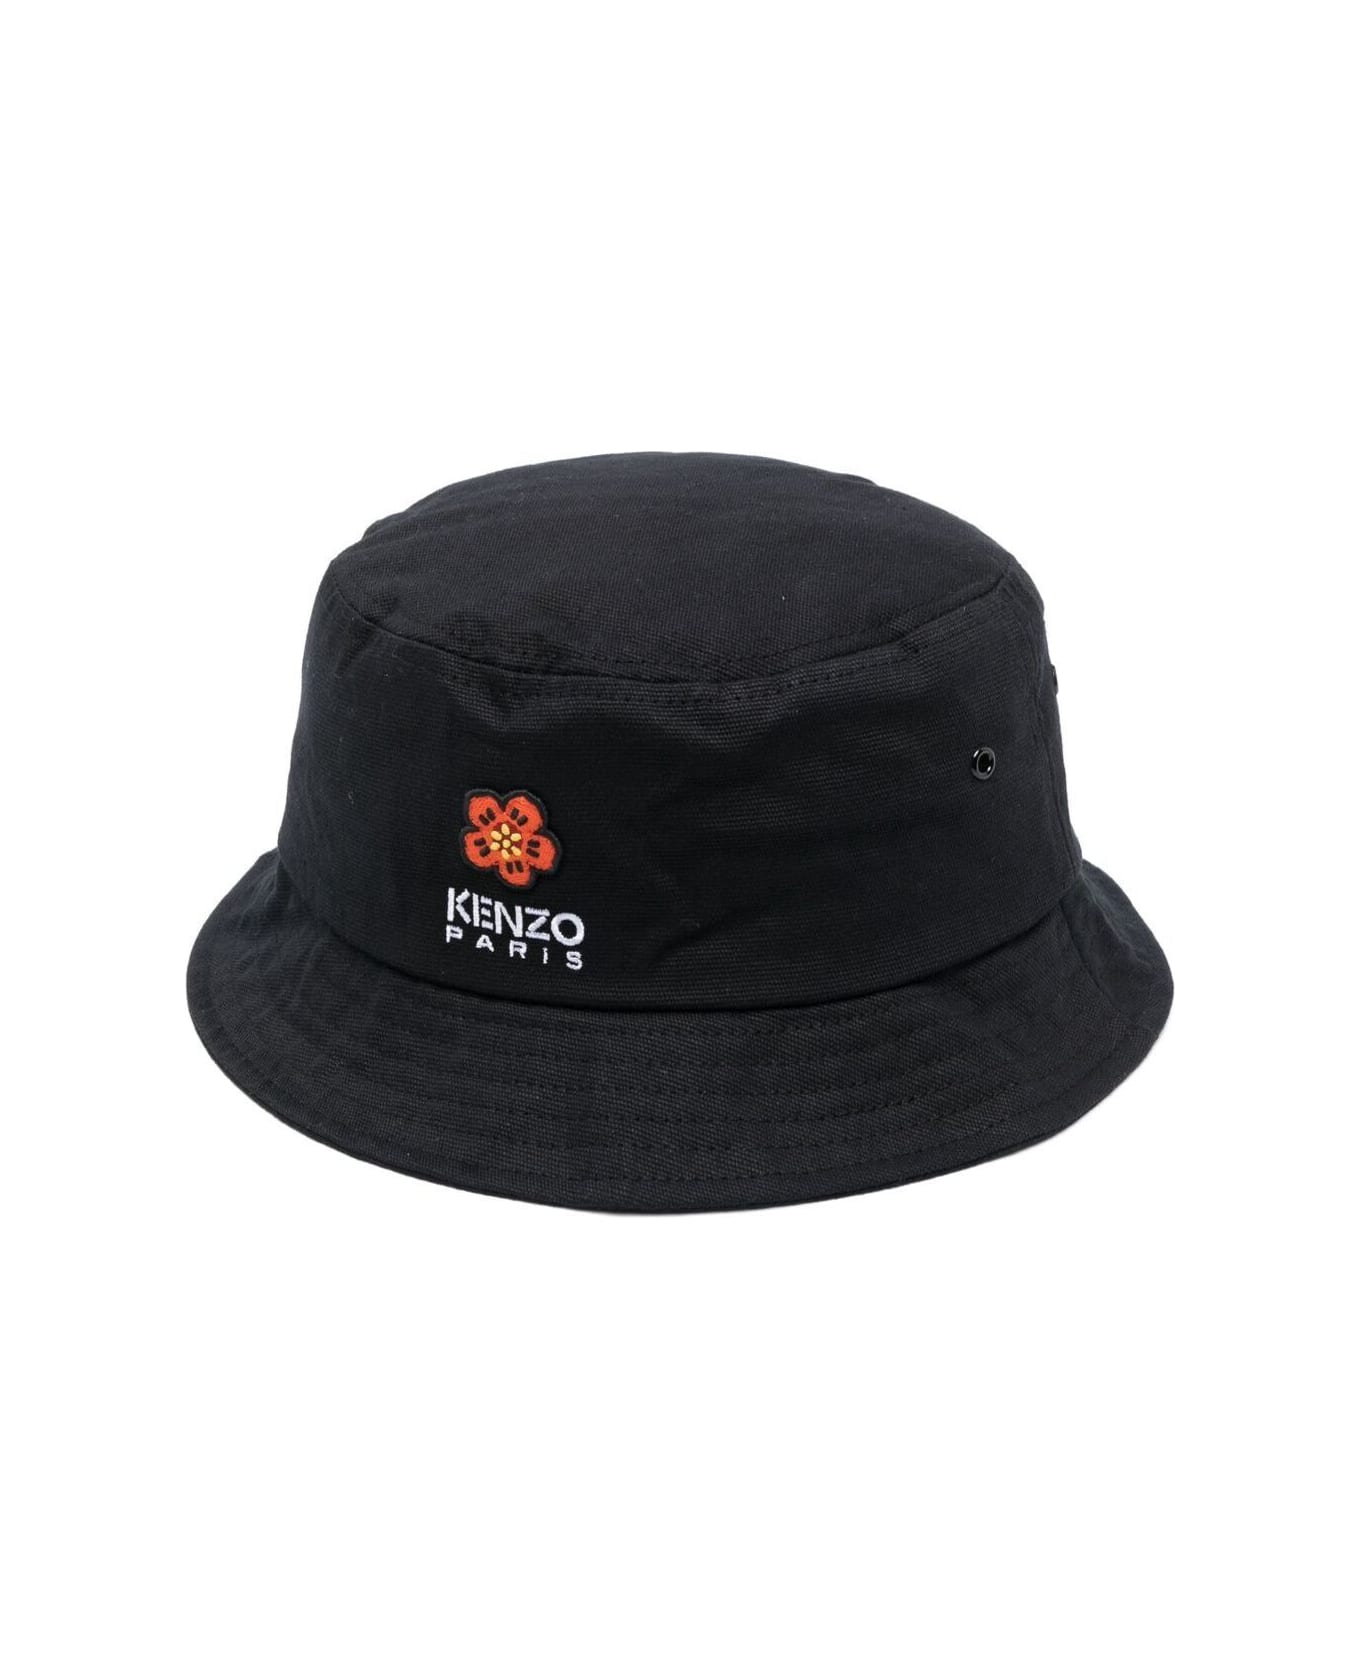 Kenzo Bucket Baker Hat - Black